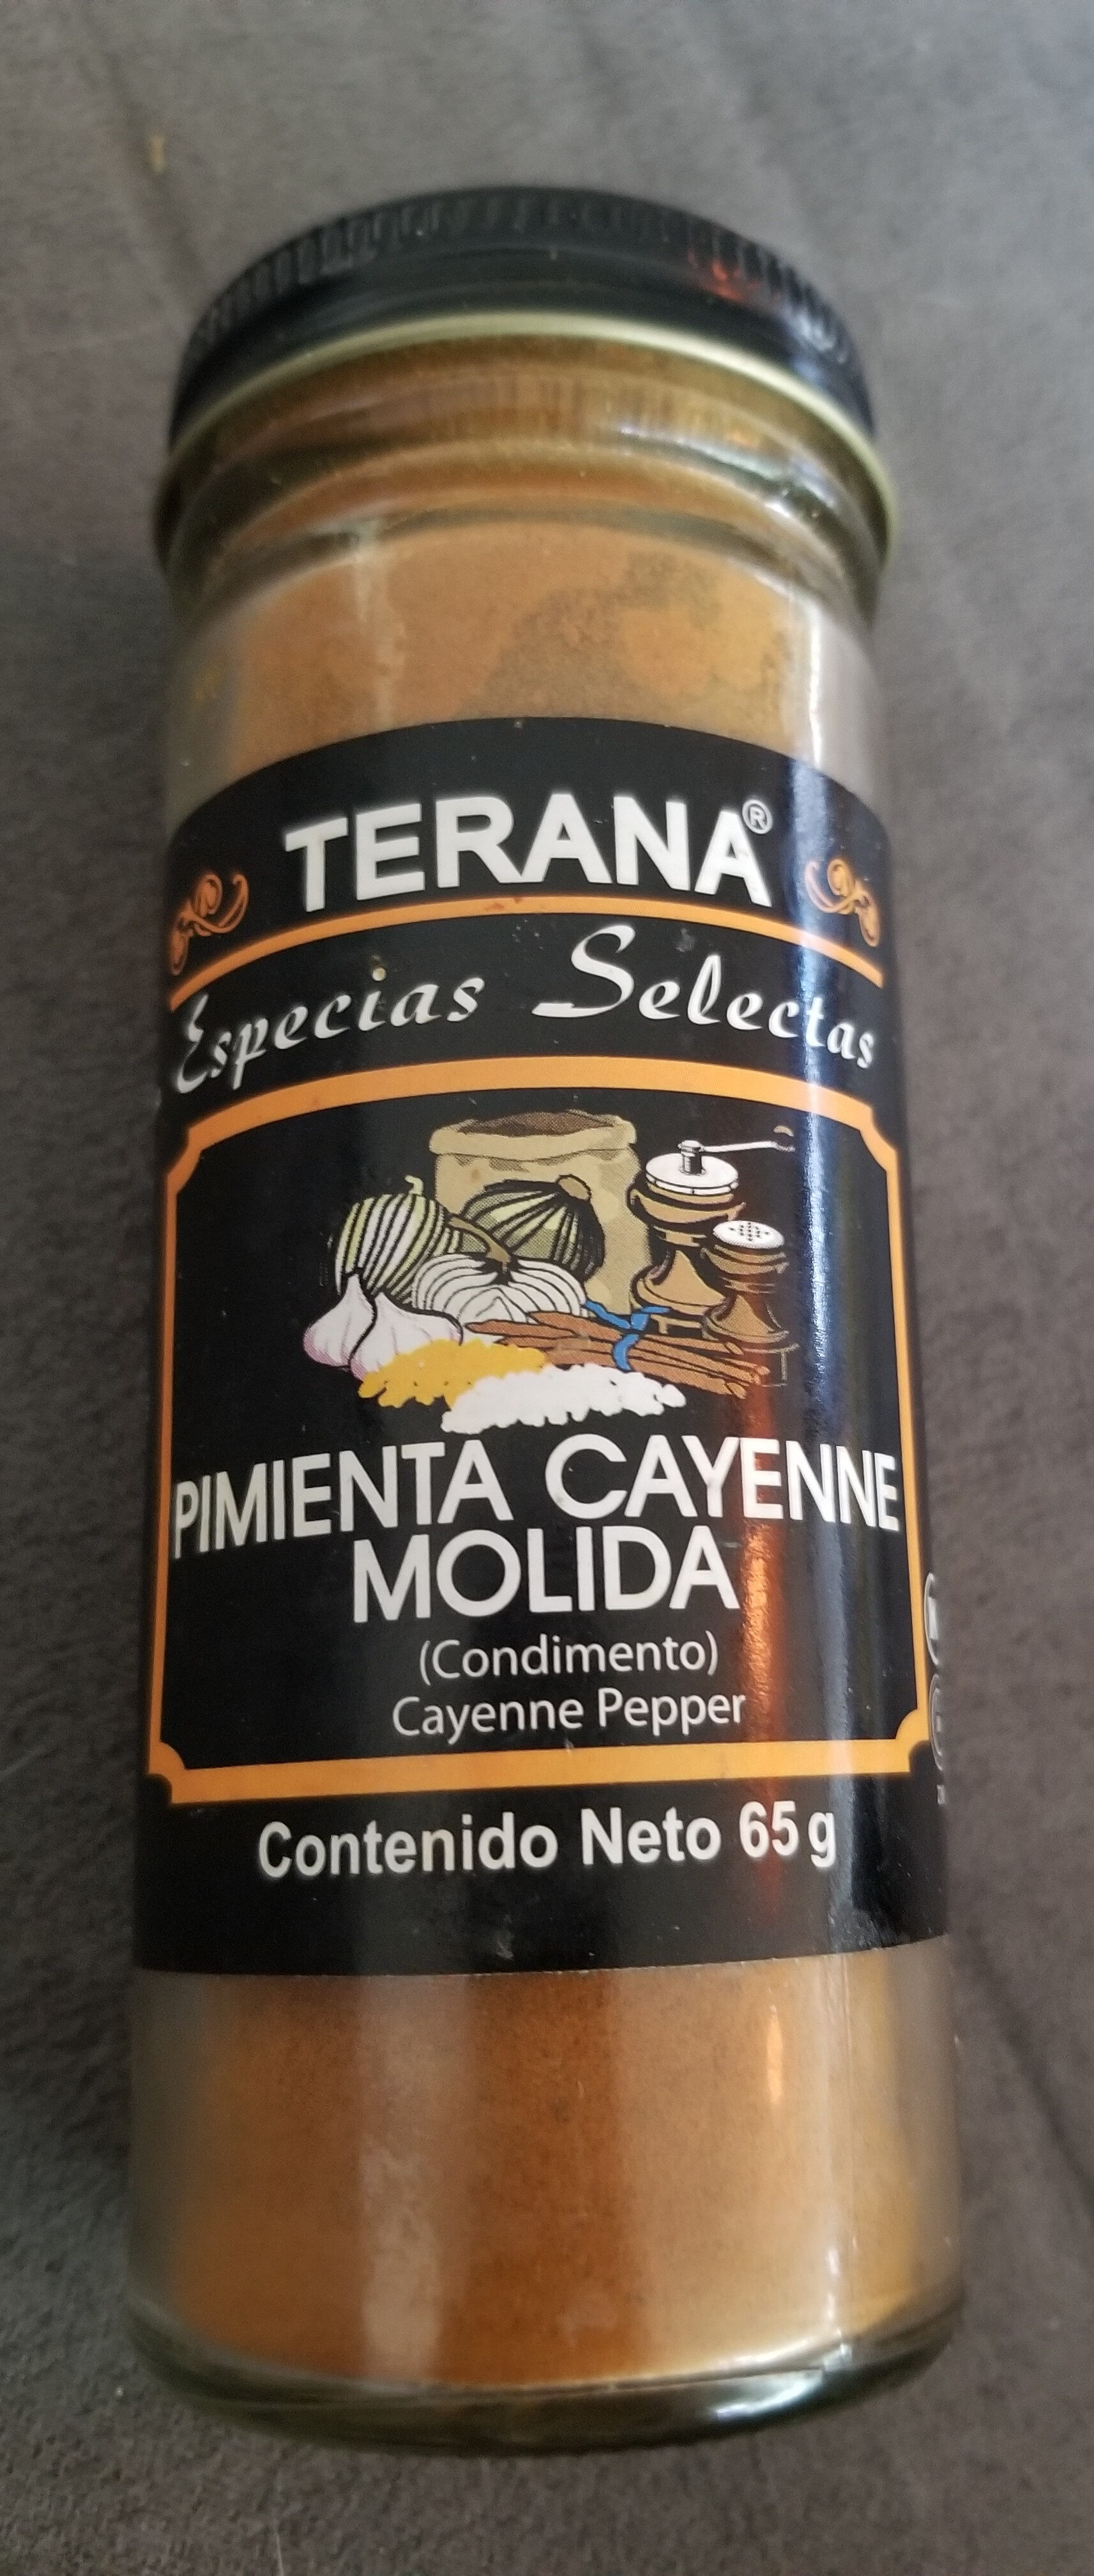 Pimienta cayena molida - Product - es